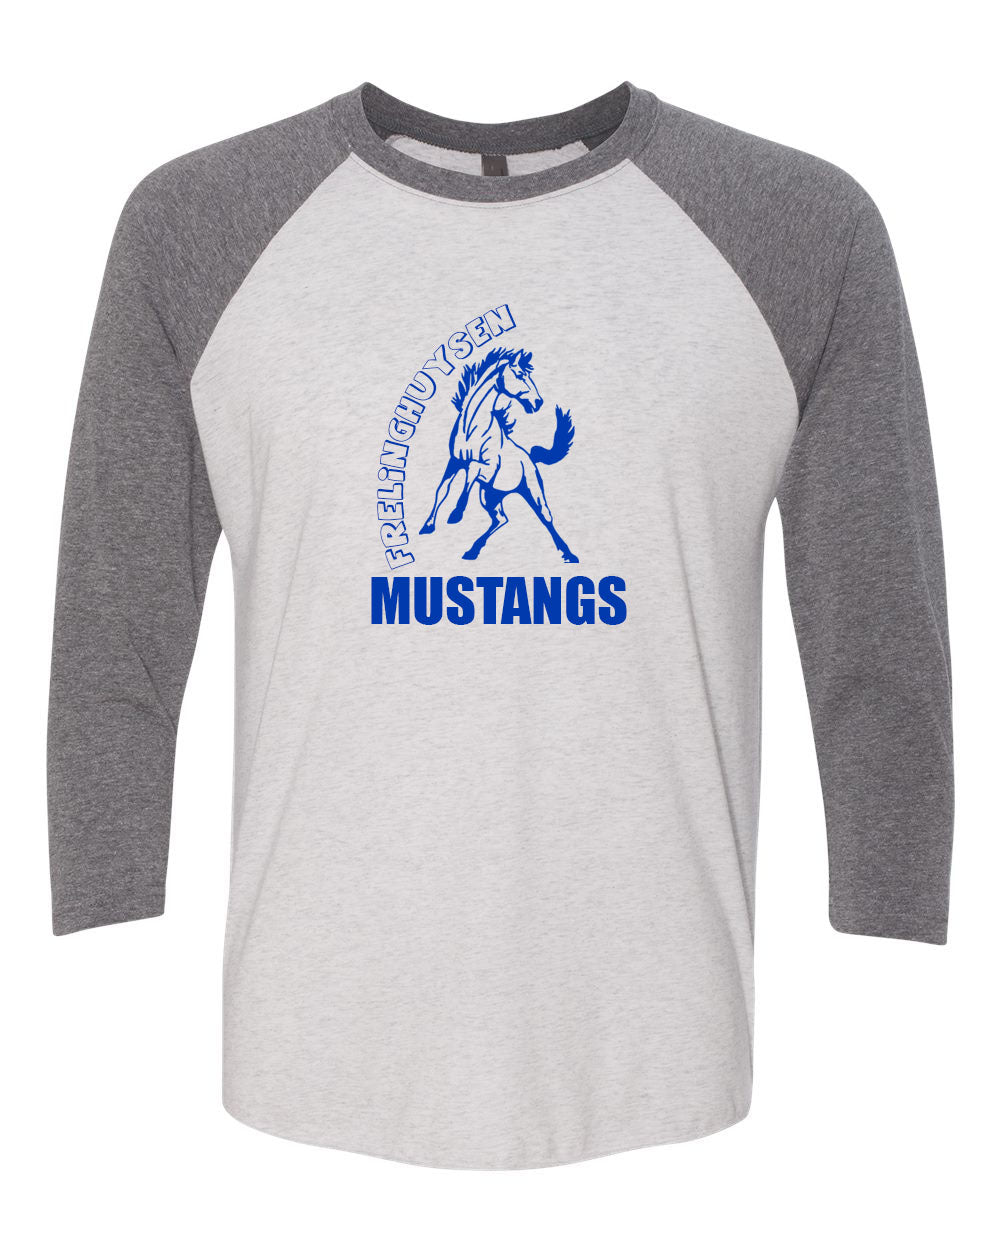 Mustangs design 4 raglan shirt